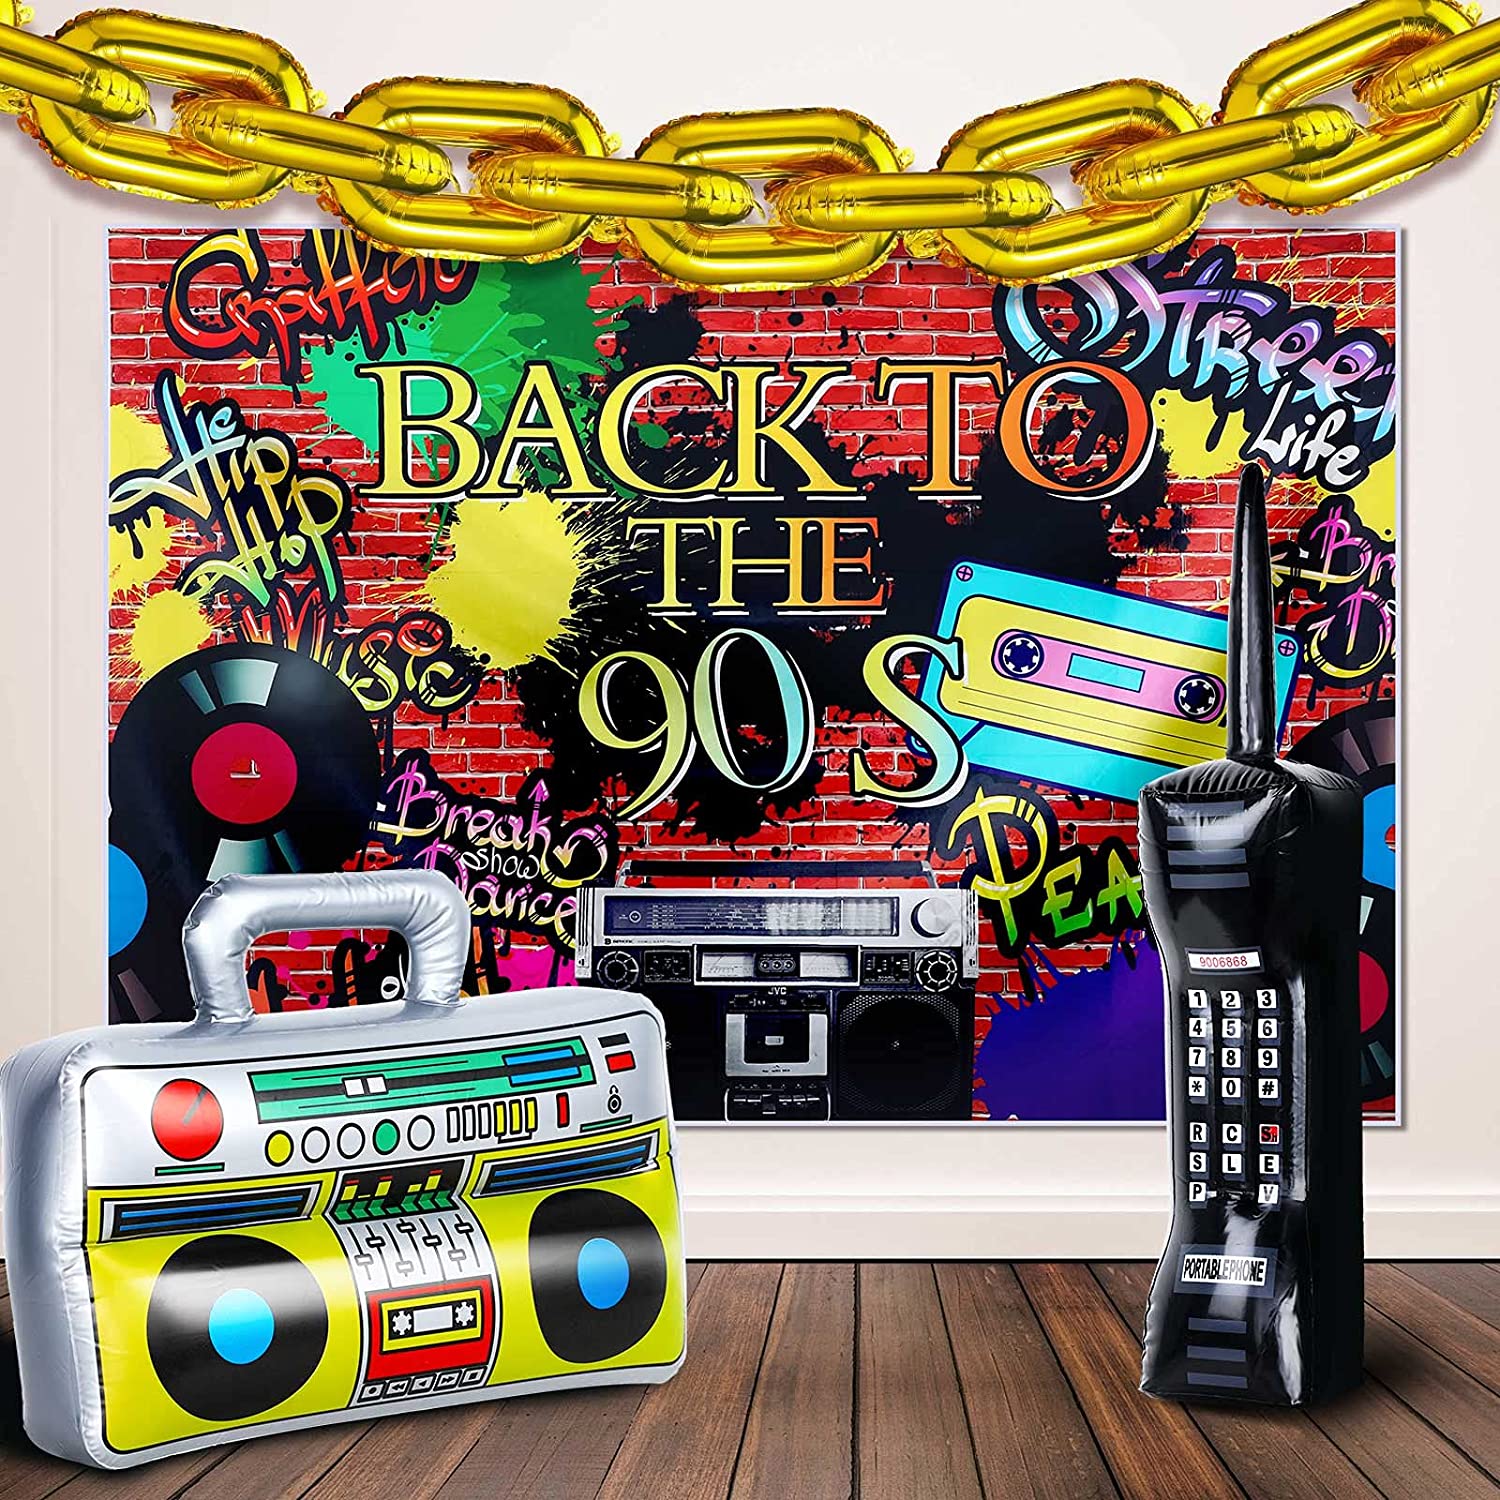 Oppustelig radio boombox og oppustelig mobiltelefon box til 80s 90s fest indretning rapper hip hop tema fødselsdag ballon legetøj